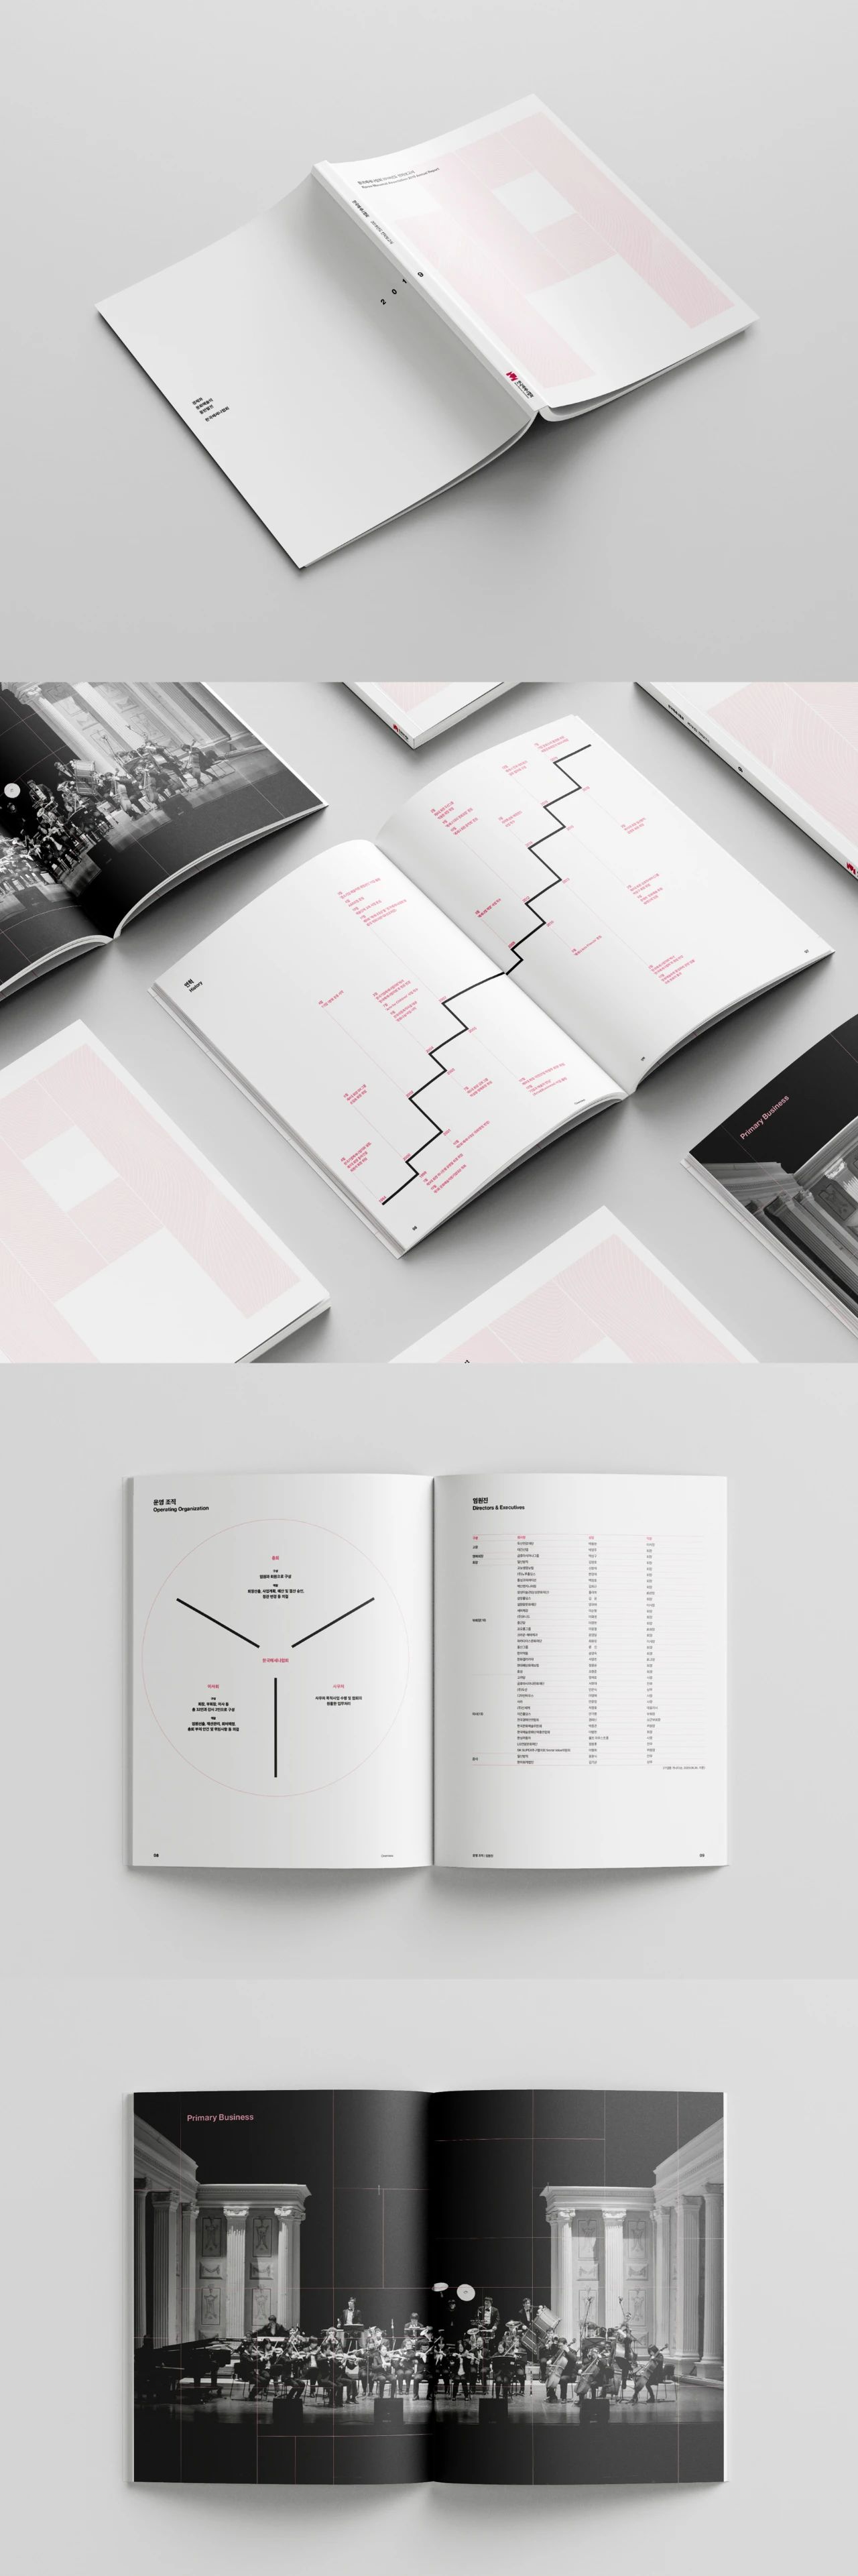 画册设计中信息图表的排版设计